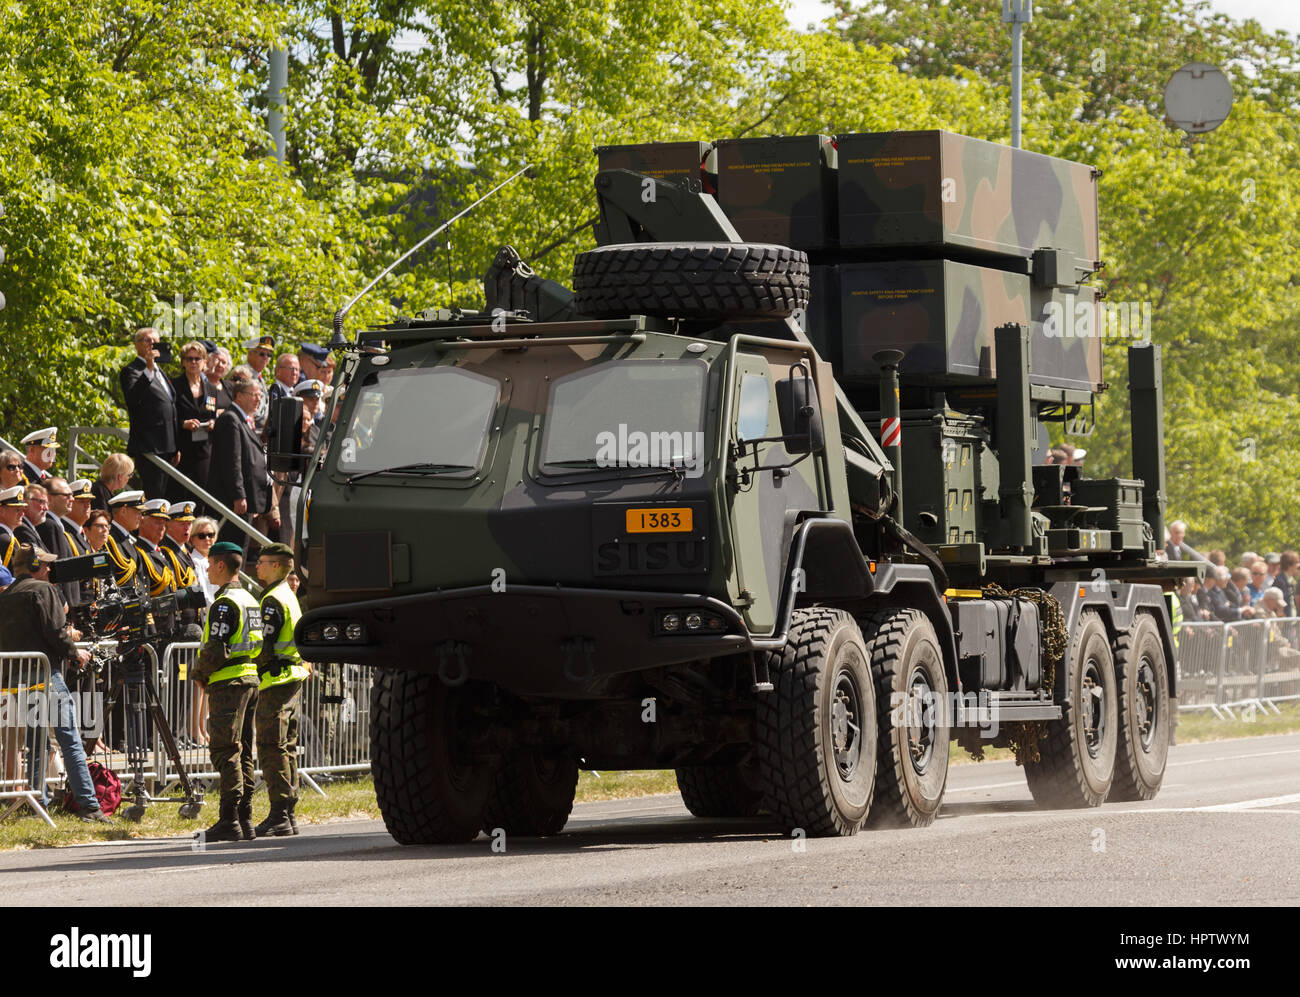 NASAMS Boden-Luft-Rakete System Trägerrakete auf Flag Day Parade in Turku, Finnland am 4. Juni 2016. Stockfoto